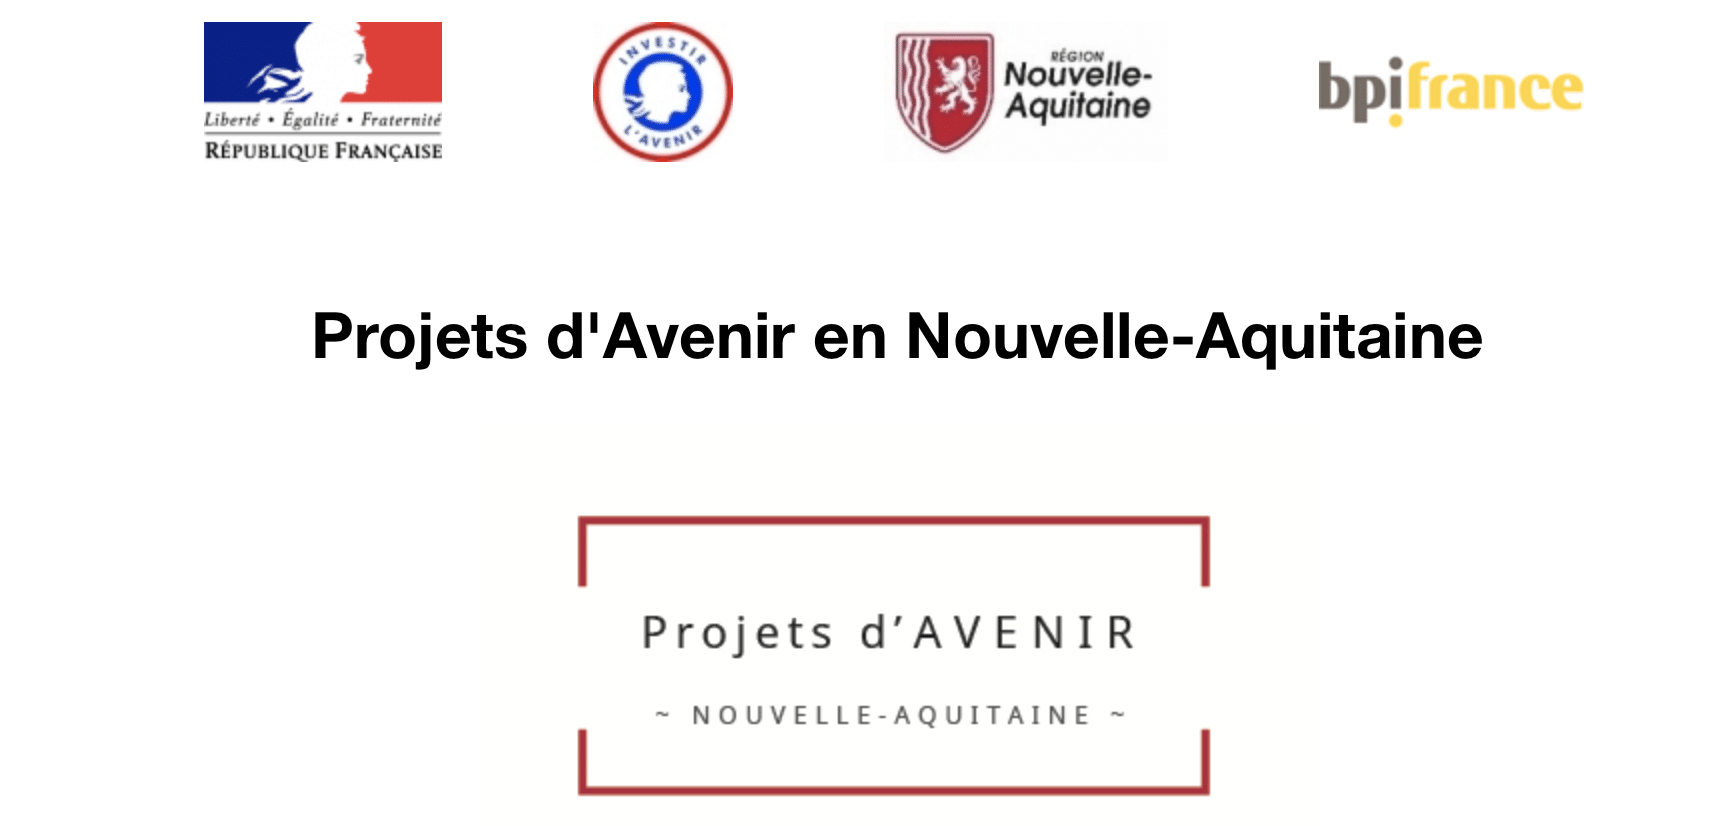 Projets d'Avenir en Nouvelle-Aquitaine